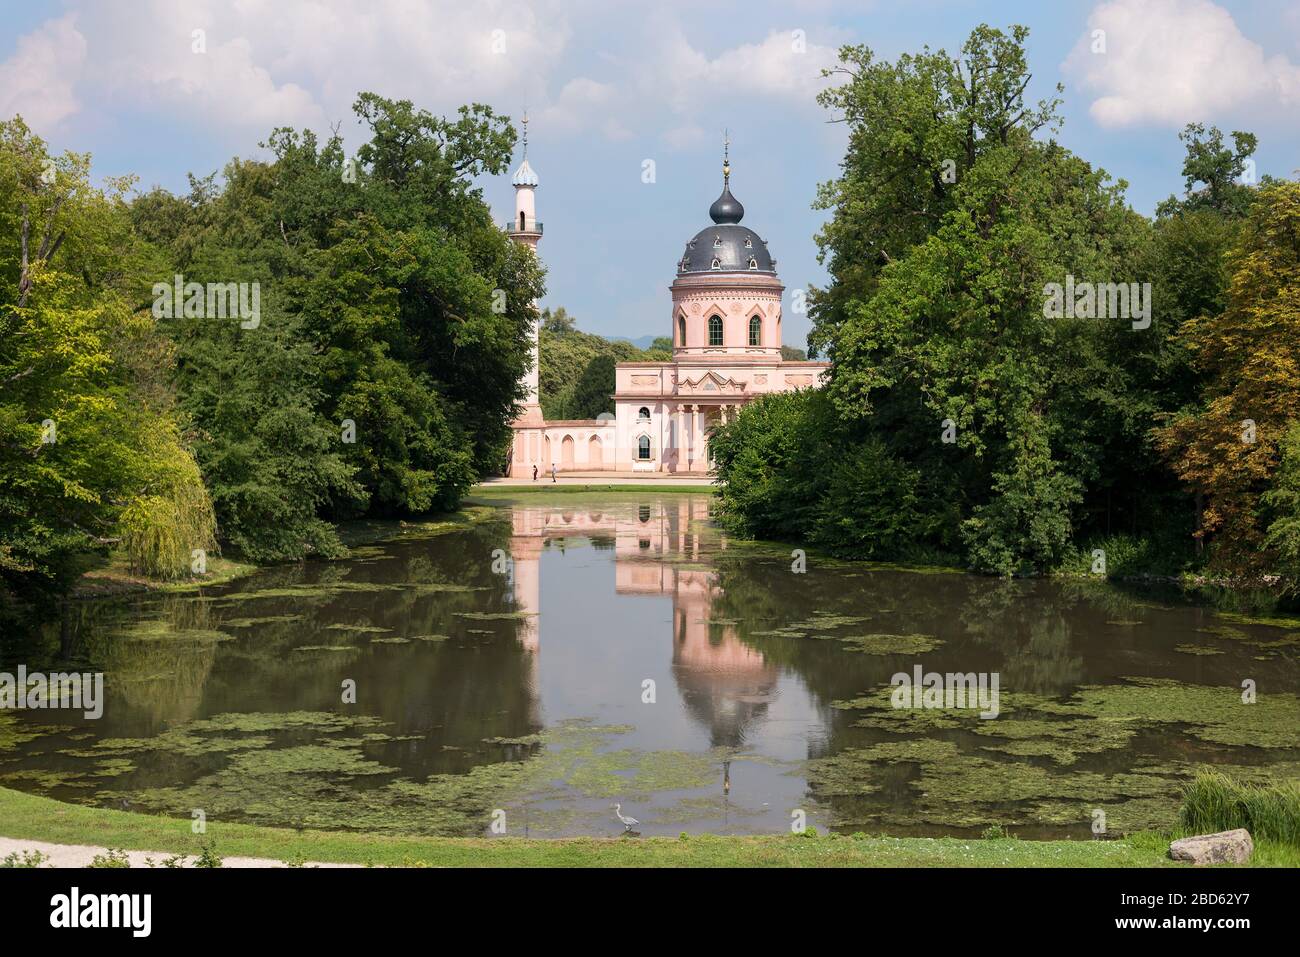 La mezquita de Schwetzingen se encuentra al otro lado de su lago en los jardines del palacio de Schwetzingen, Schwetzingen, Alemania. Foto de stock